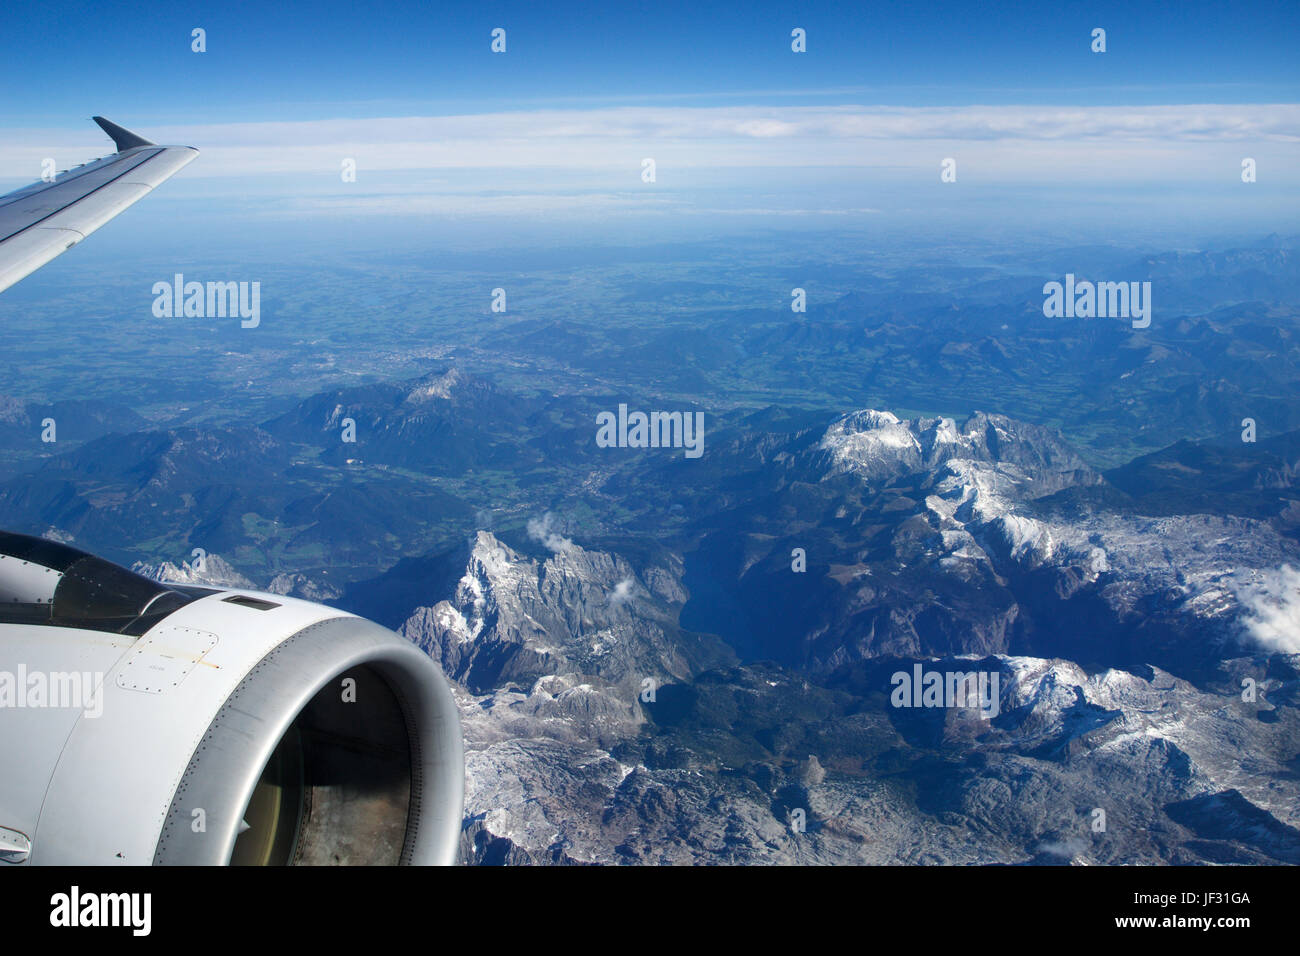 AUSTRIA - Octubre 2016: Los Alpes vistos desde un avión, ala vista con turbina de avión o el motor Foto de stock